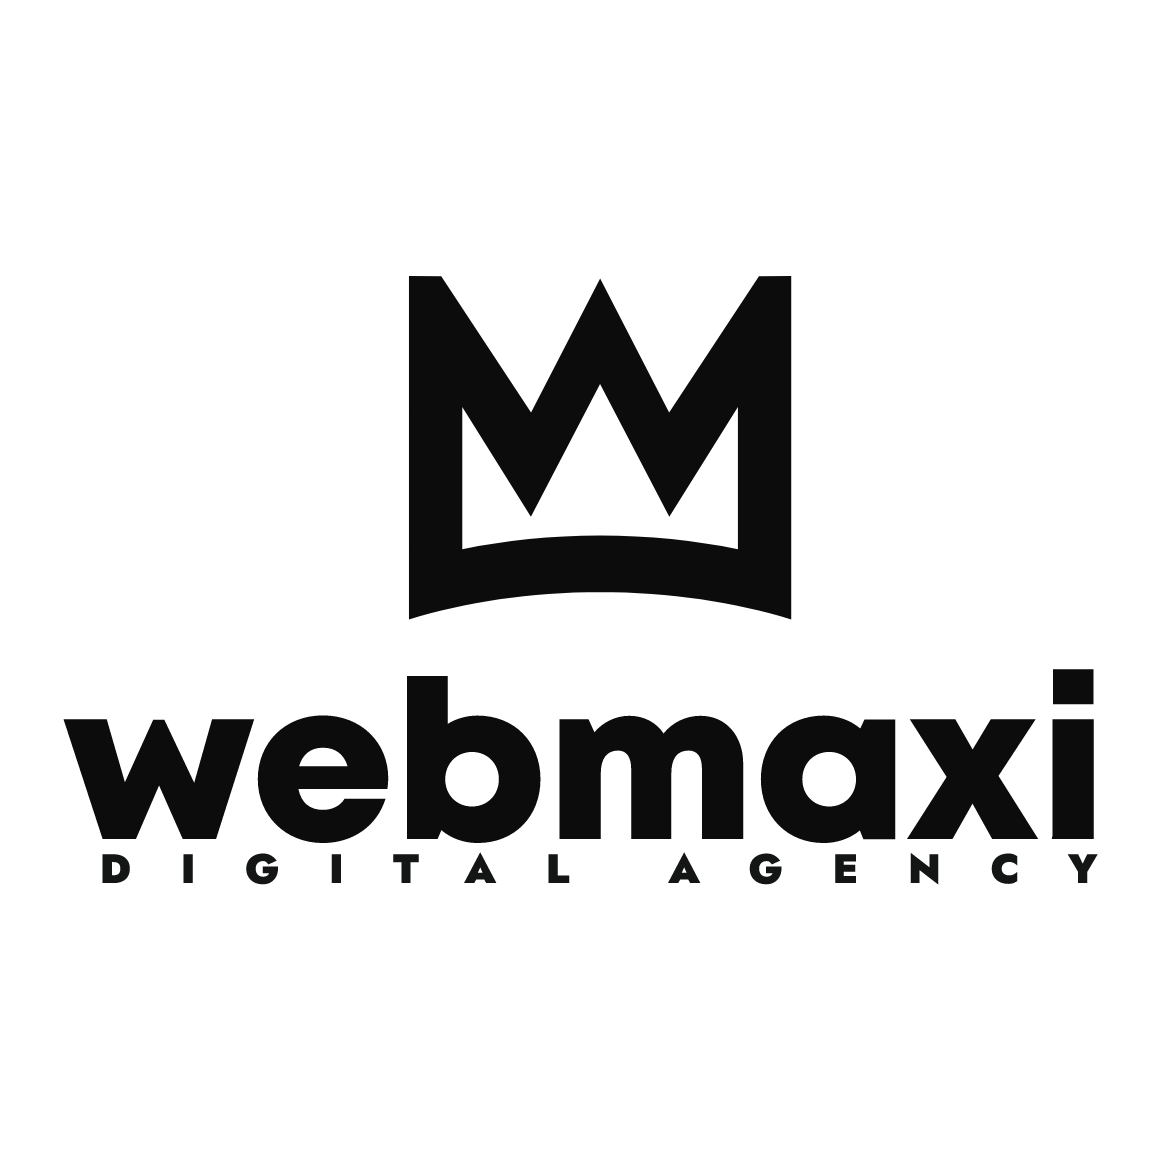 Webmaxi Digital Agency